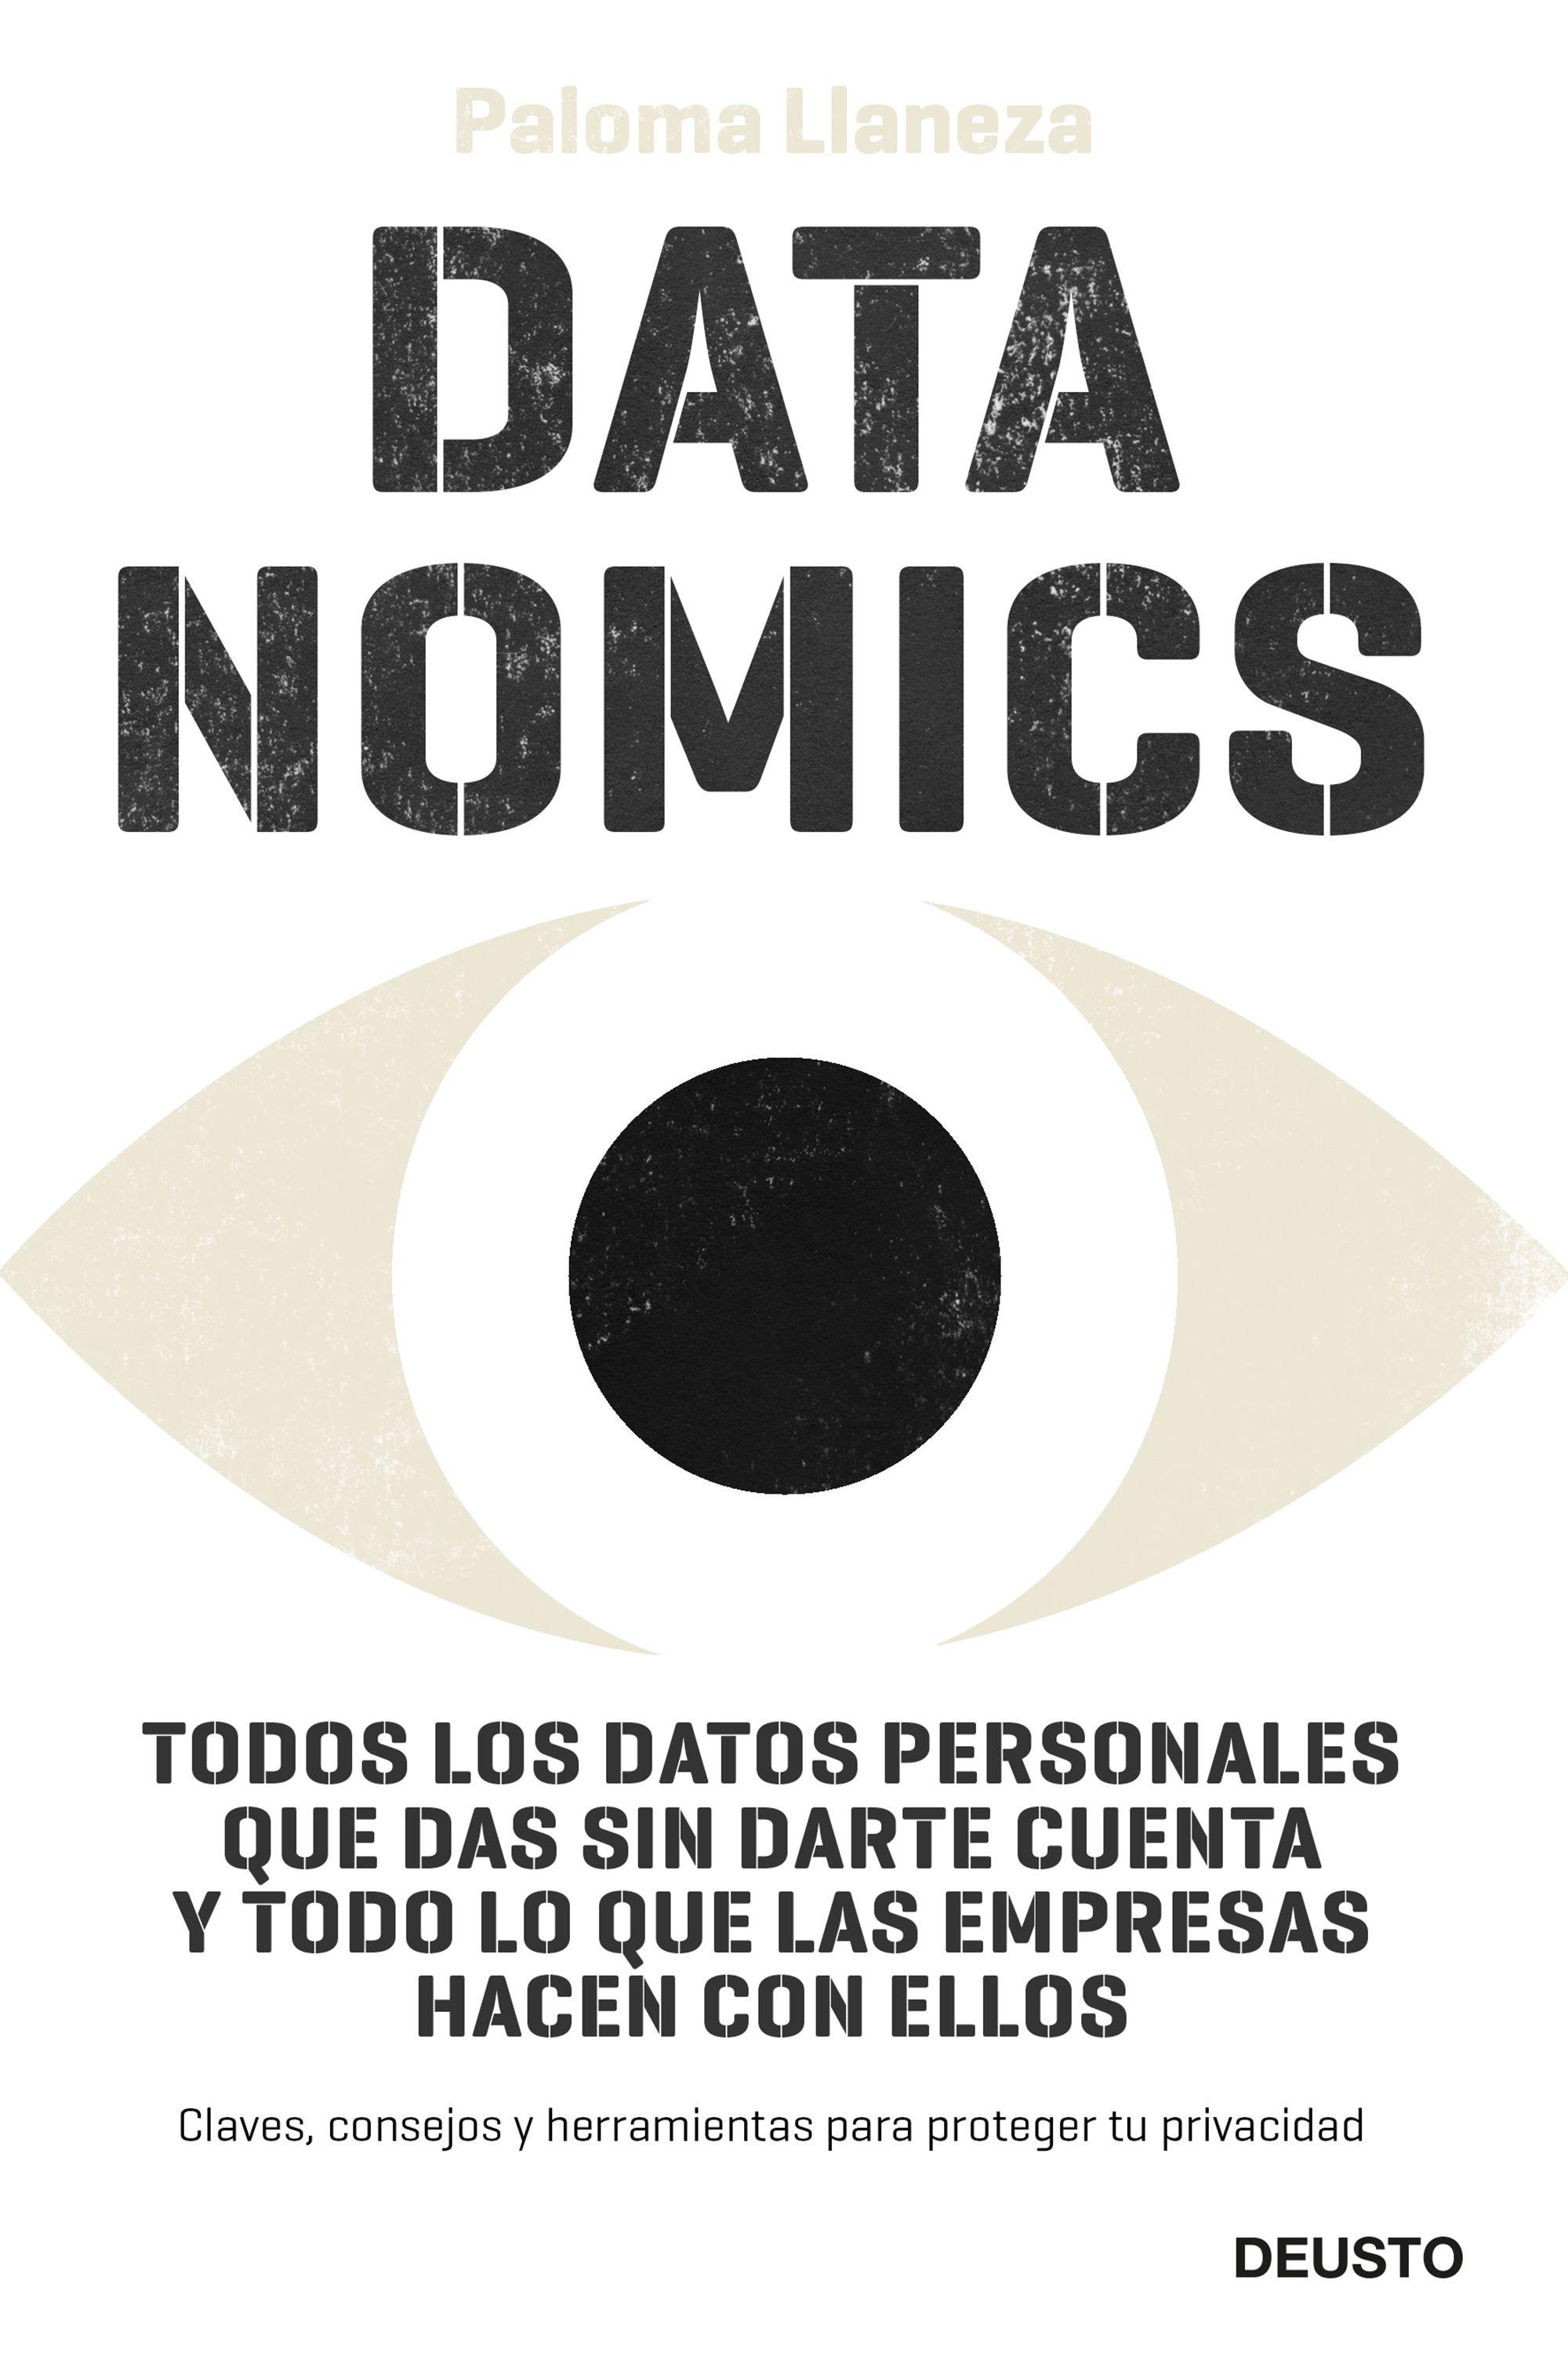 Datanomics "Todos los datos personales que das sin darte cuenta y todo lo que las em". 